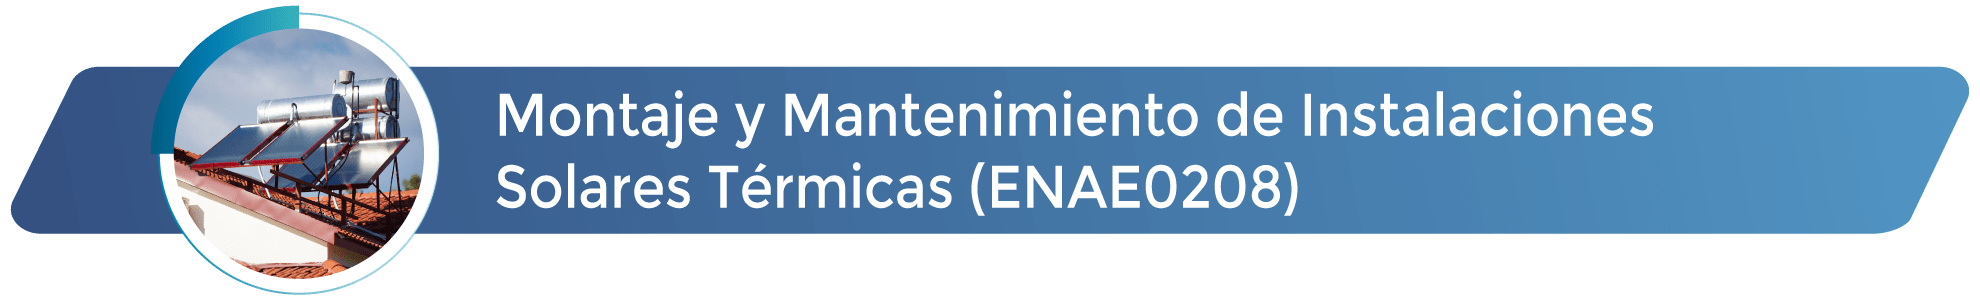 ENAE0208 - Montaje y mantenimiento de instalaciones solares térmicas